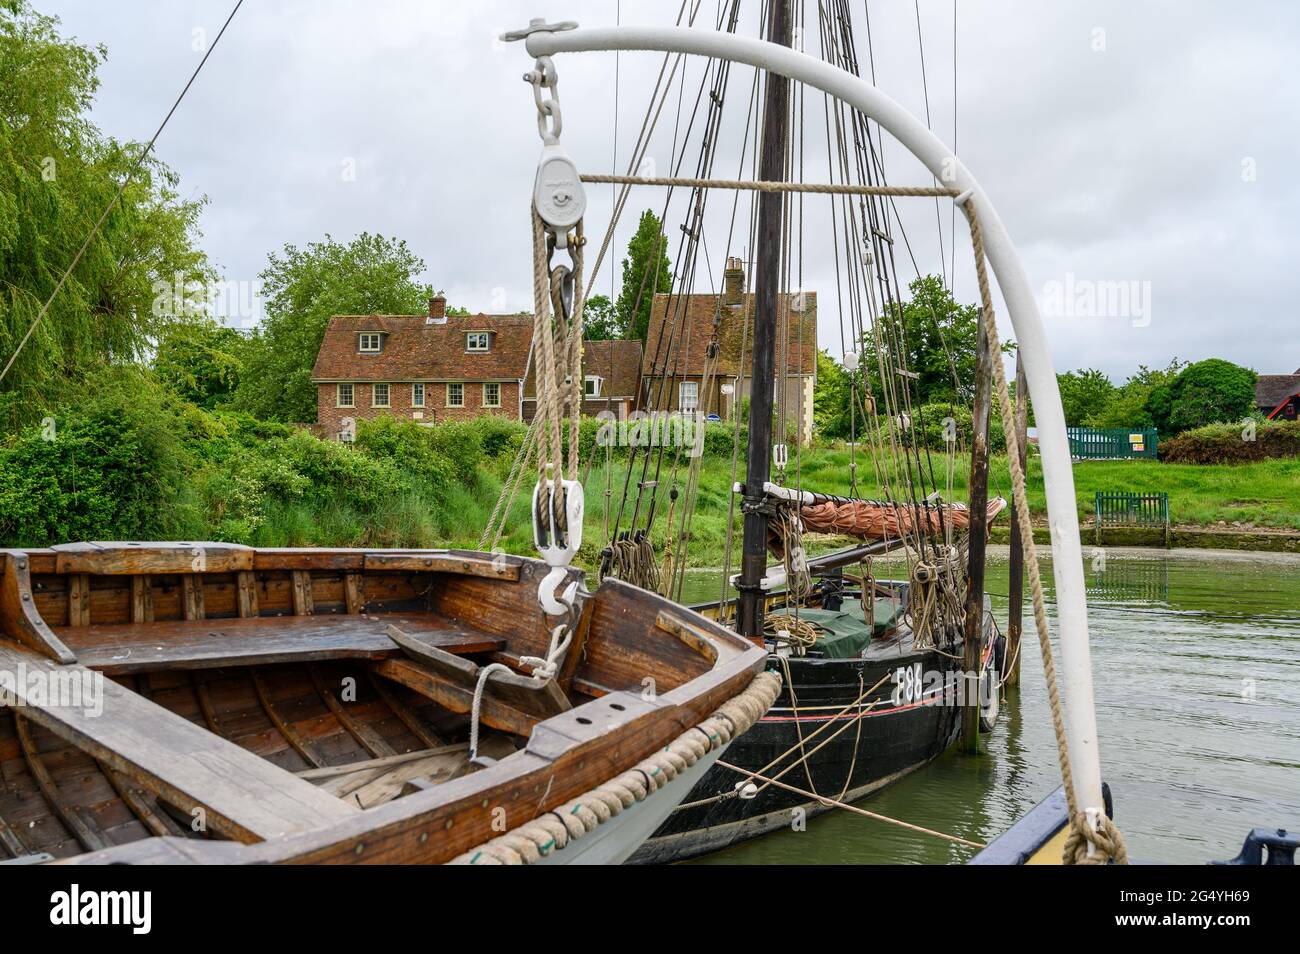 Im Vordergrund das Beiboot der Segelbarge 'Edith May' mit der Whitstable Oyster Smack Thistle F86, die dahinter in Lower Halstow, Kent, England, vertäut ist. Stockfoto